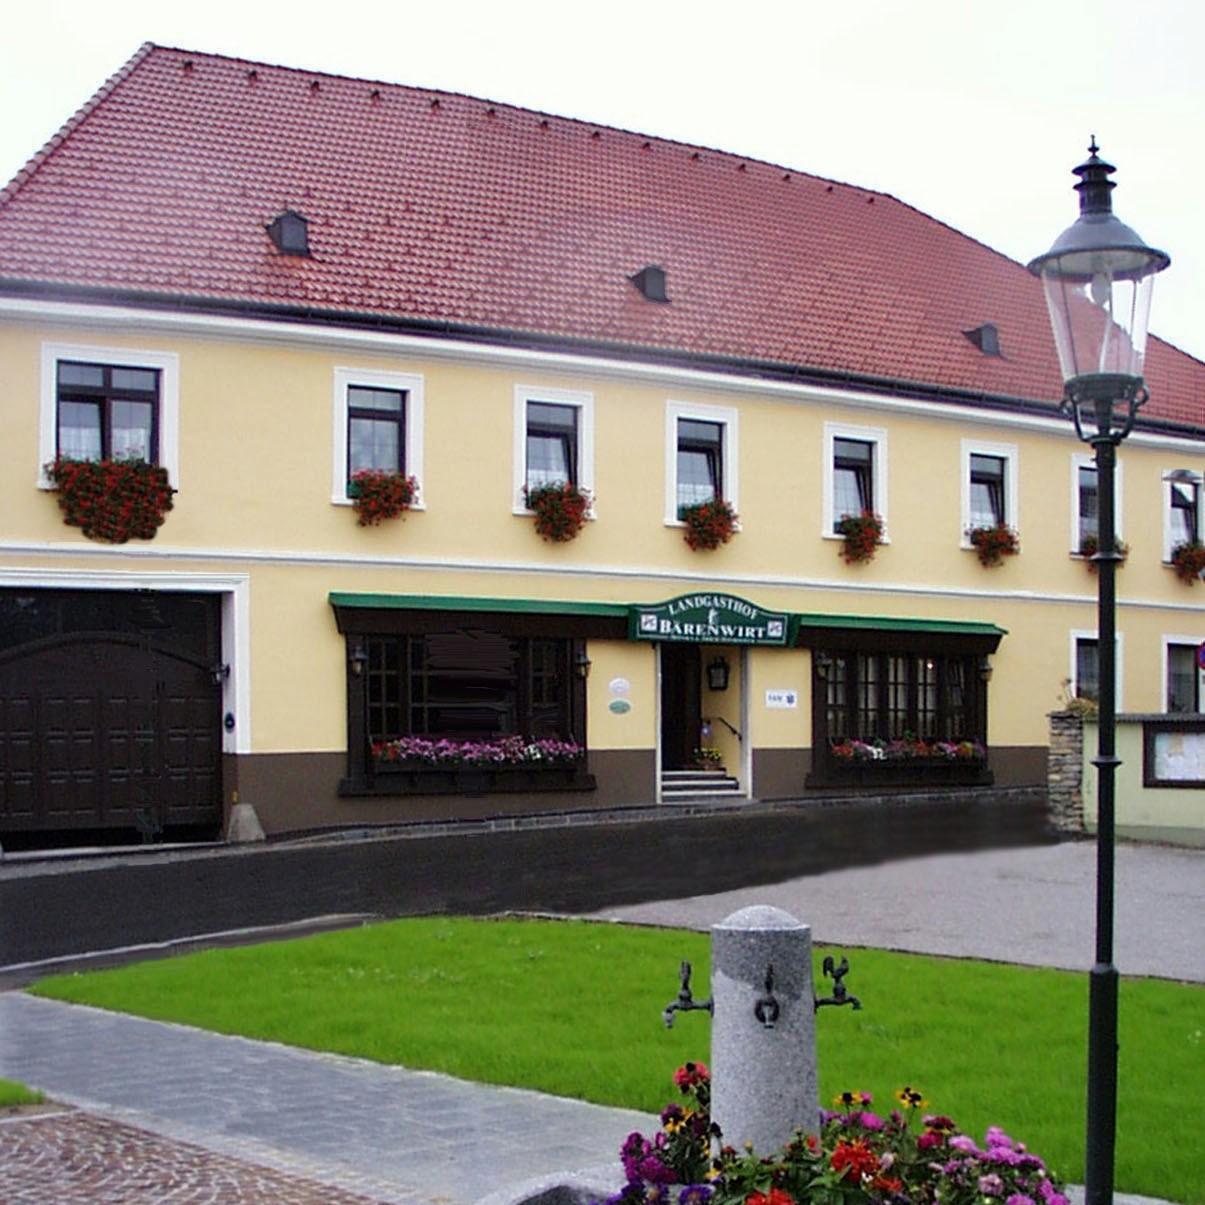 Restaurant "Landgasthof Bärenwirt" in Petzenkirchen